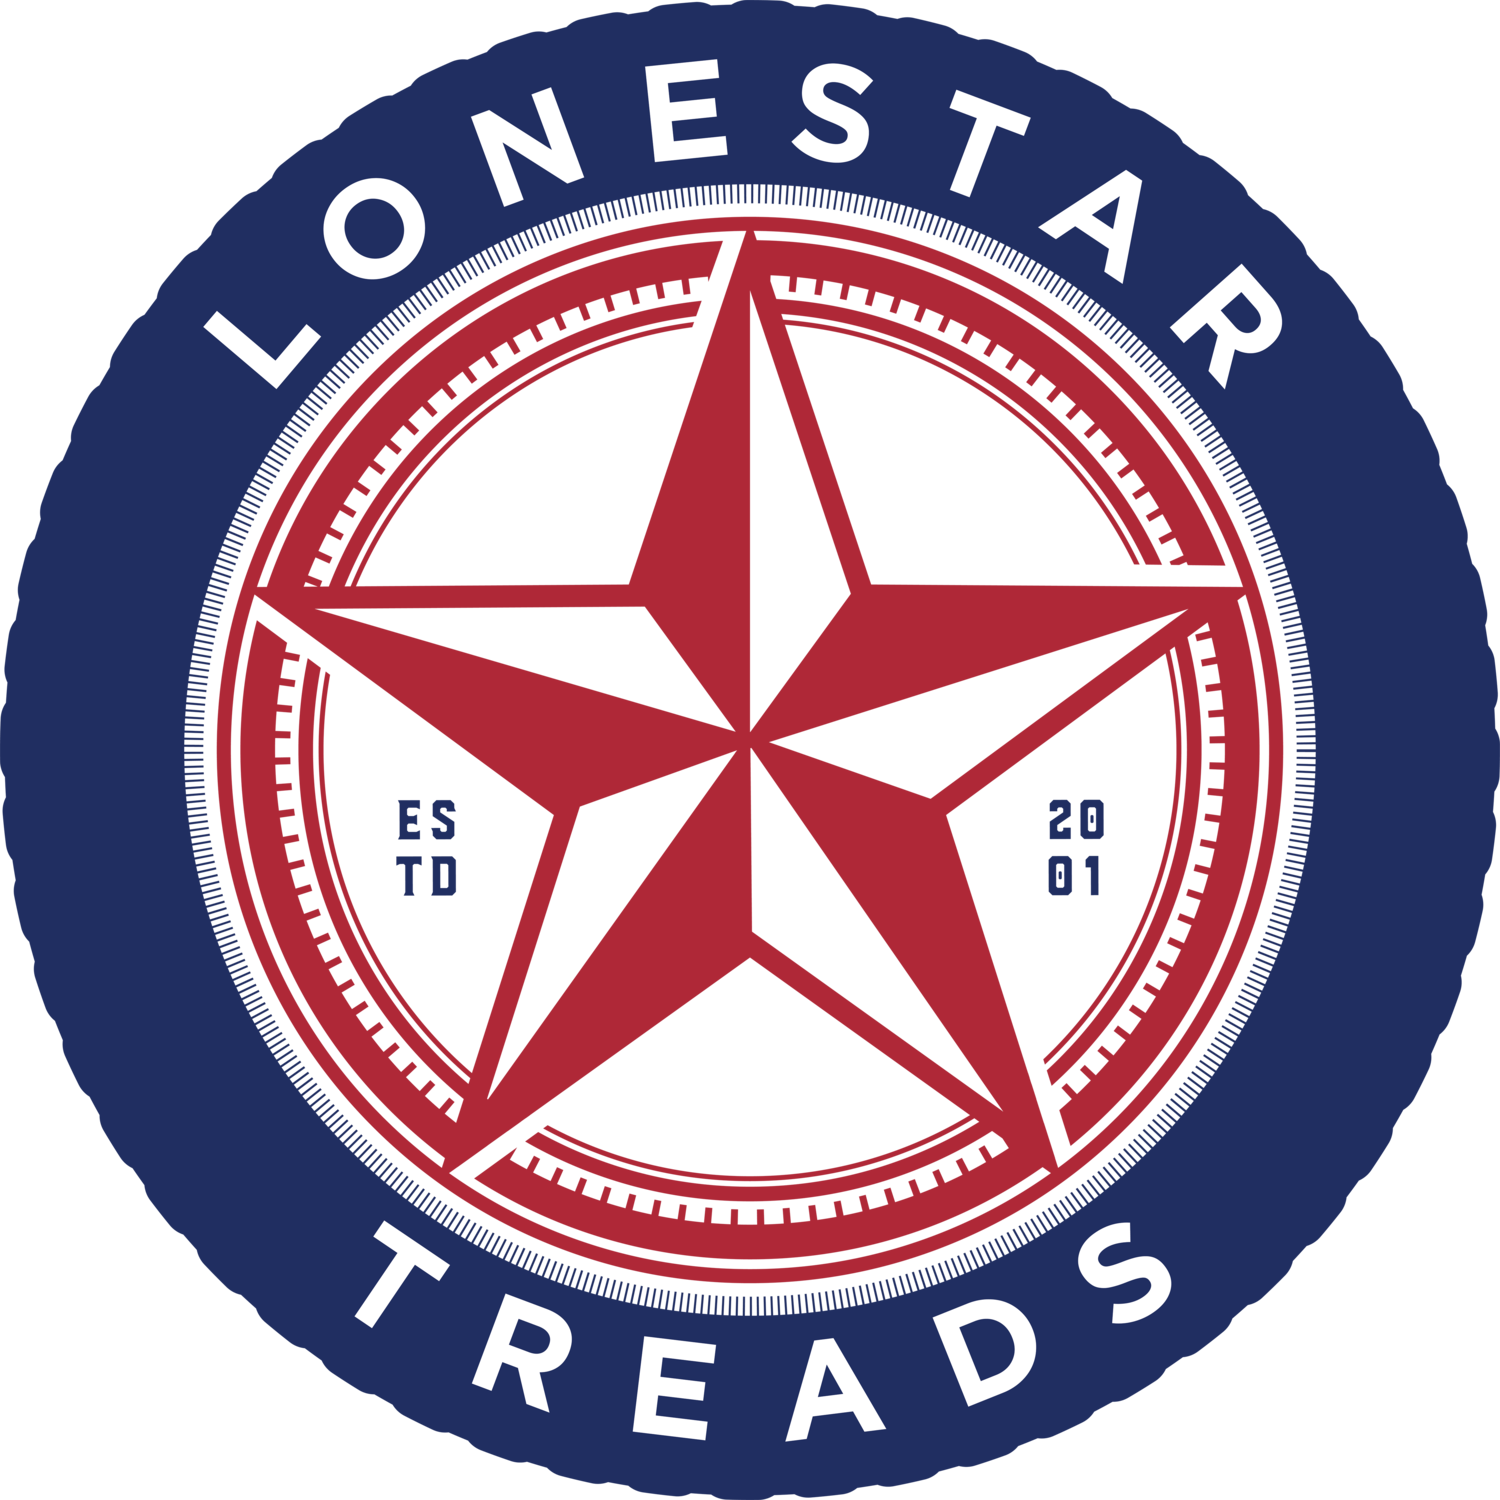 Lonestar Treads